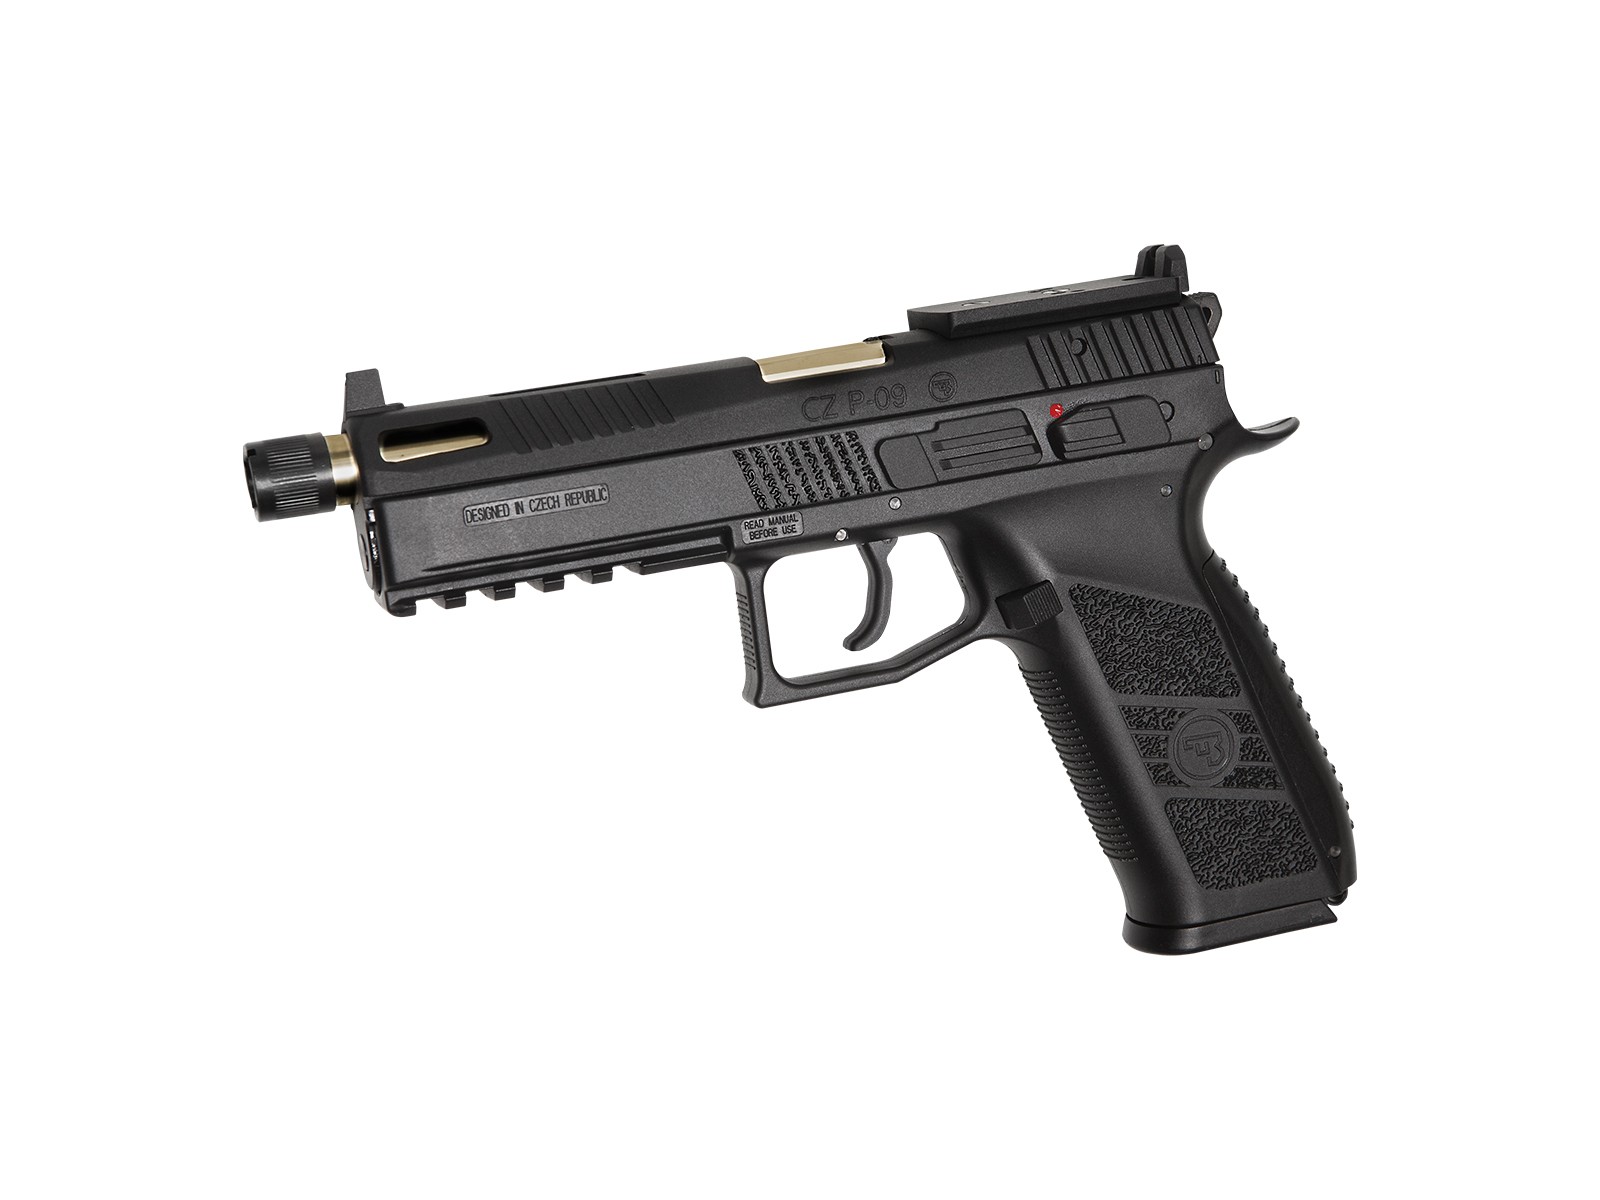 ASG - pistolet Automatique CZ P-09 GBB - CO2 - Gold et noir - (1 Joules) -  Elite Airsoft